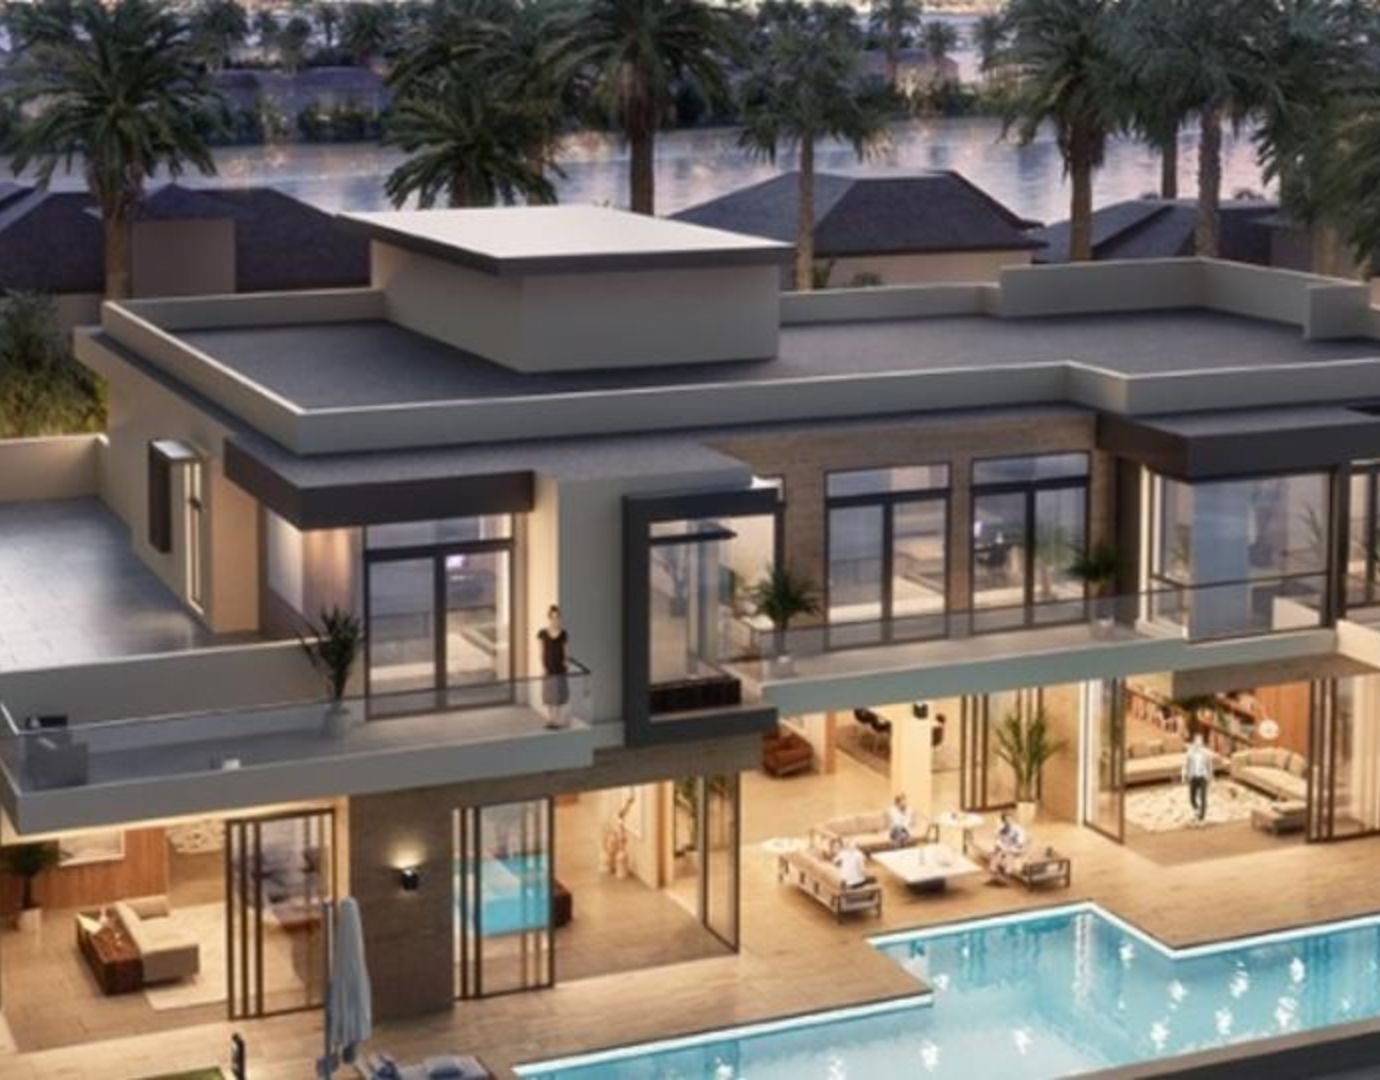 Dubai's Costliest Home